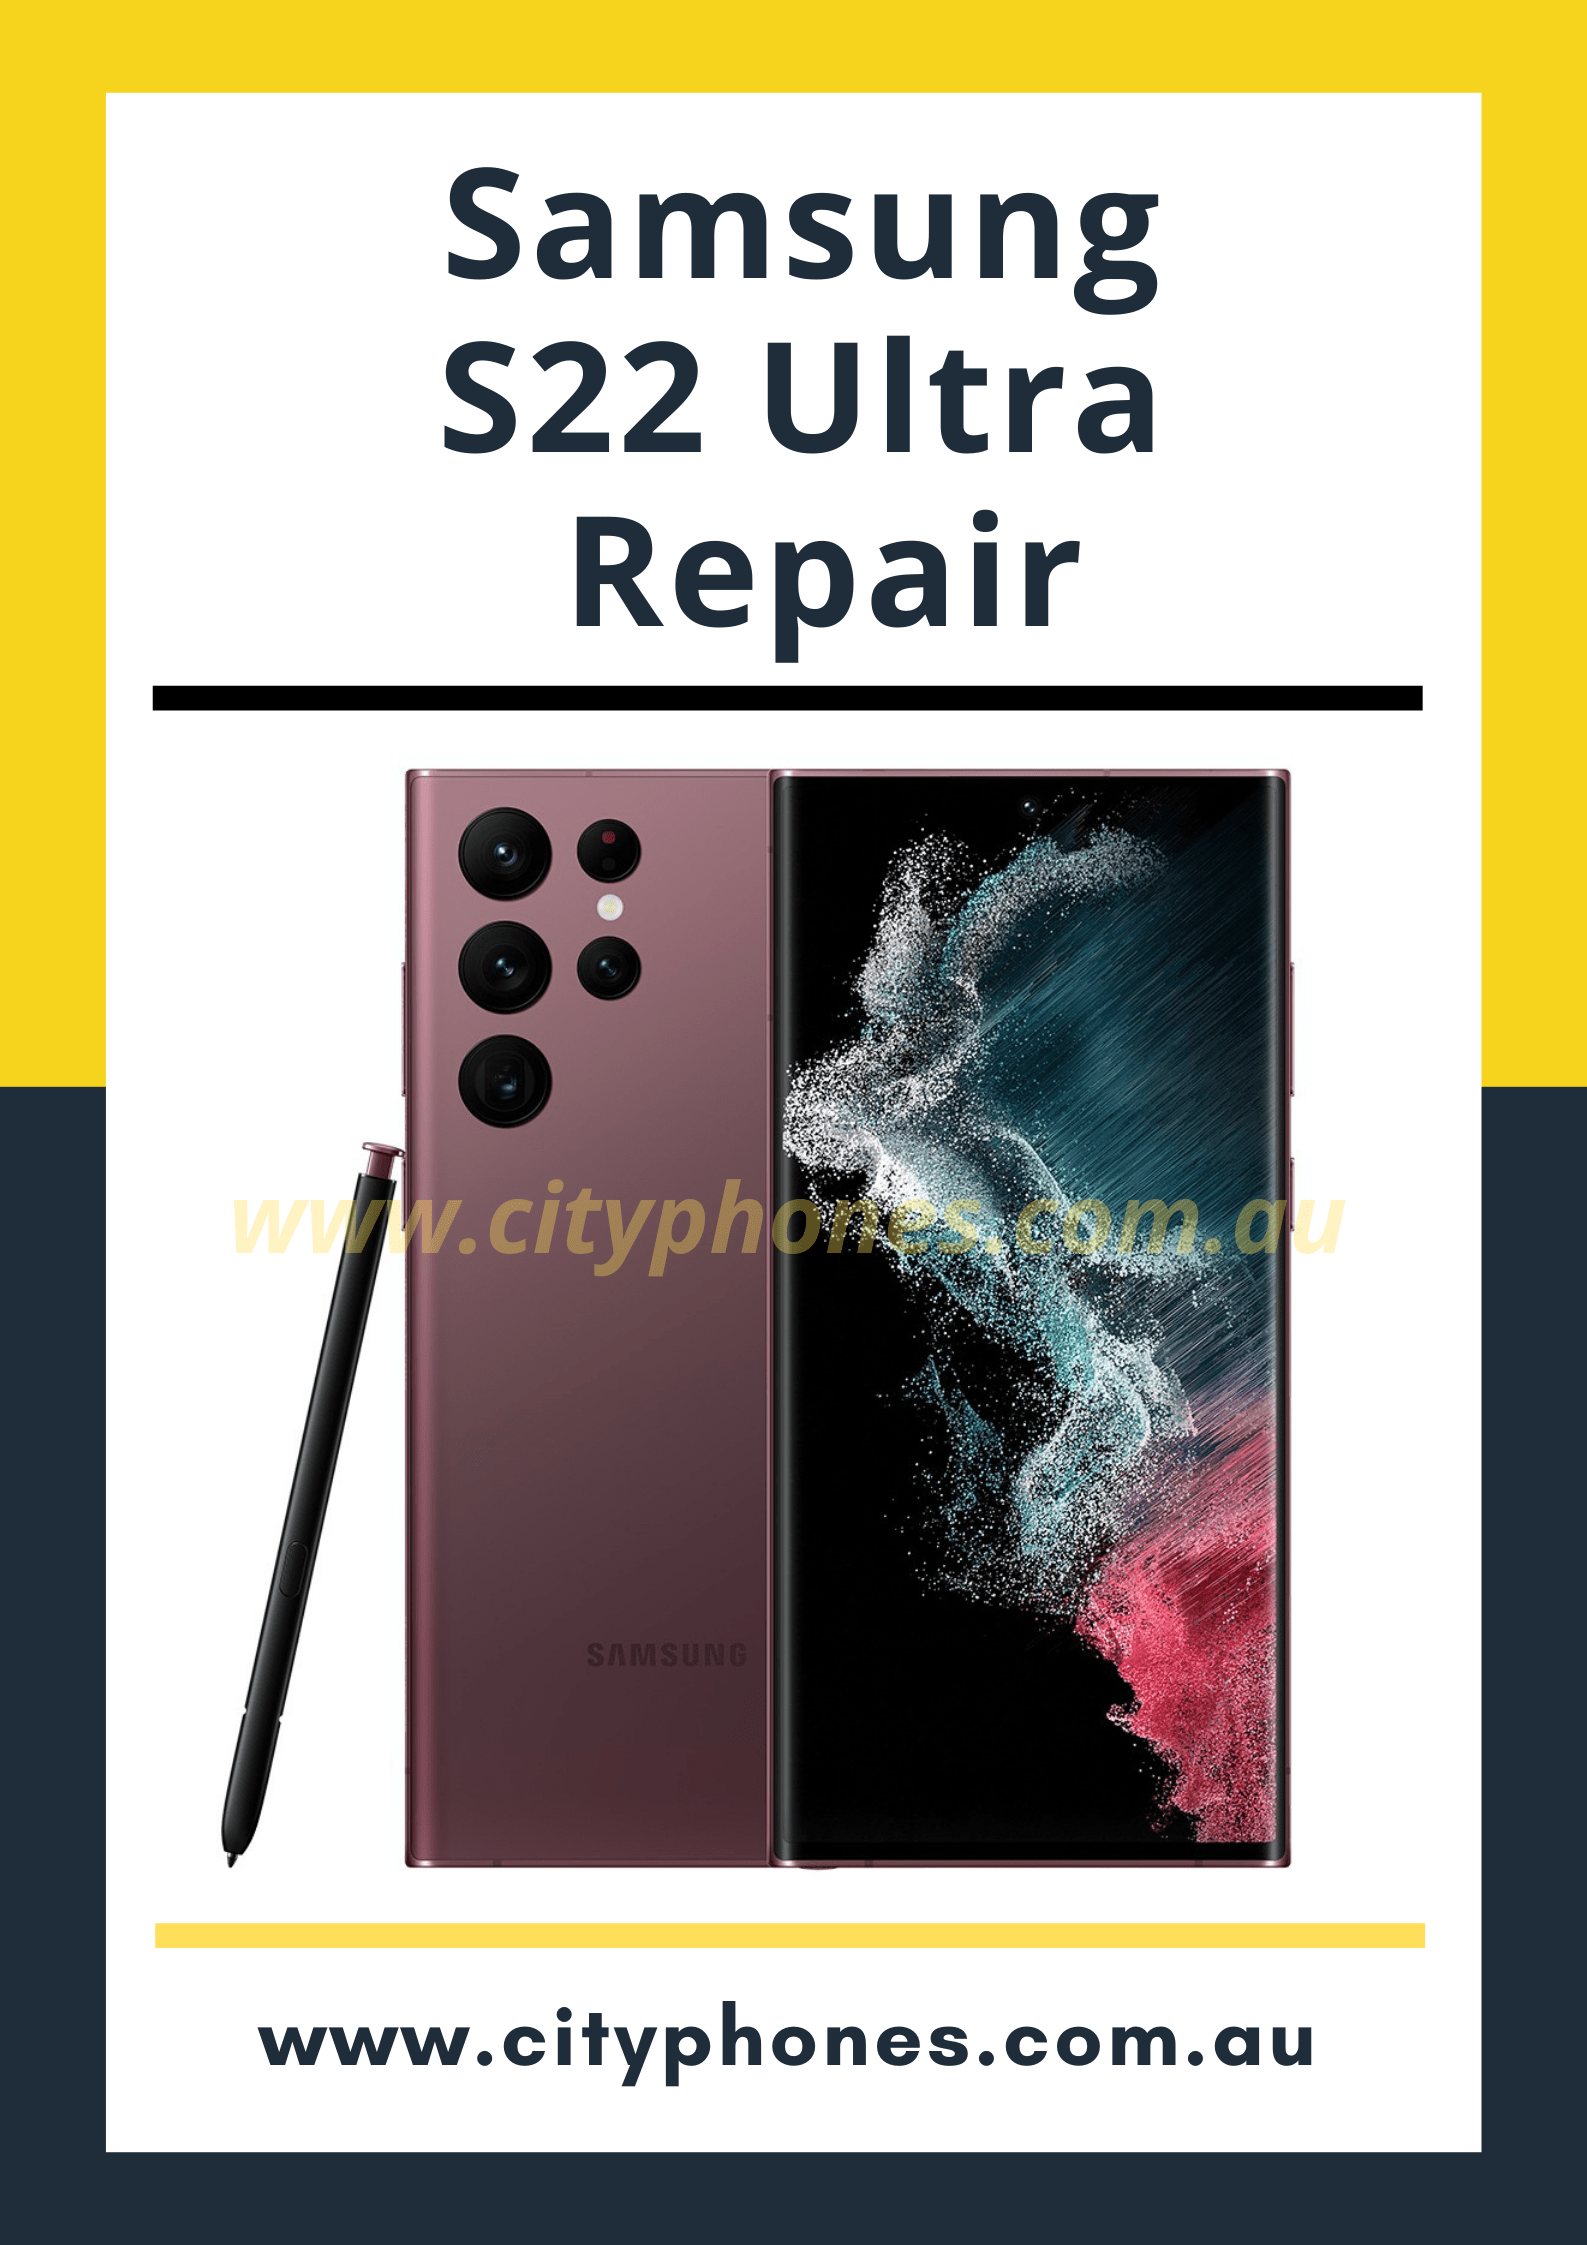 Samsung S22 Ultra Repair